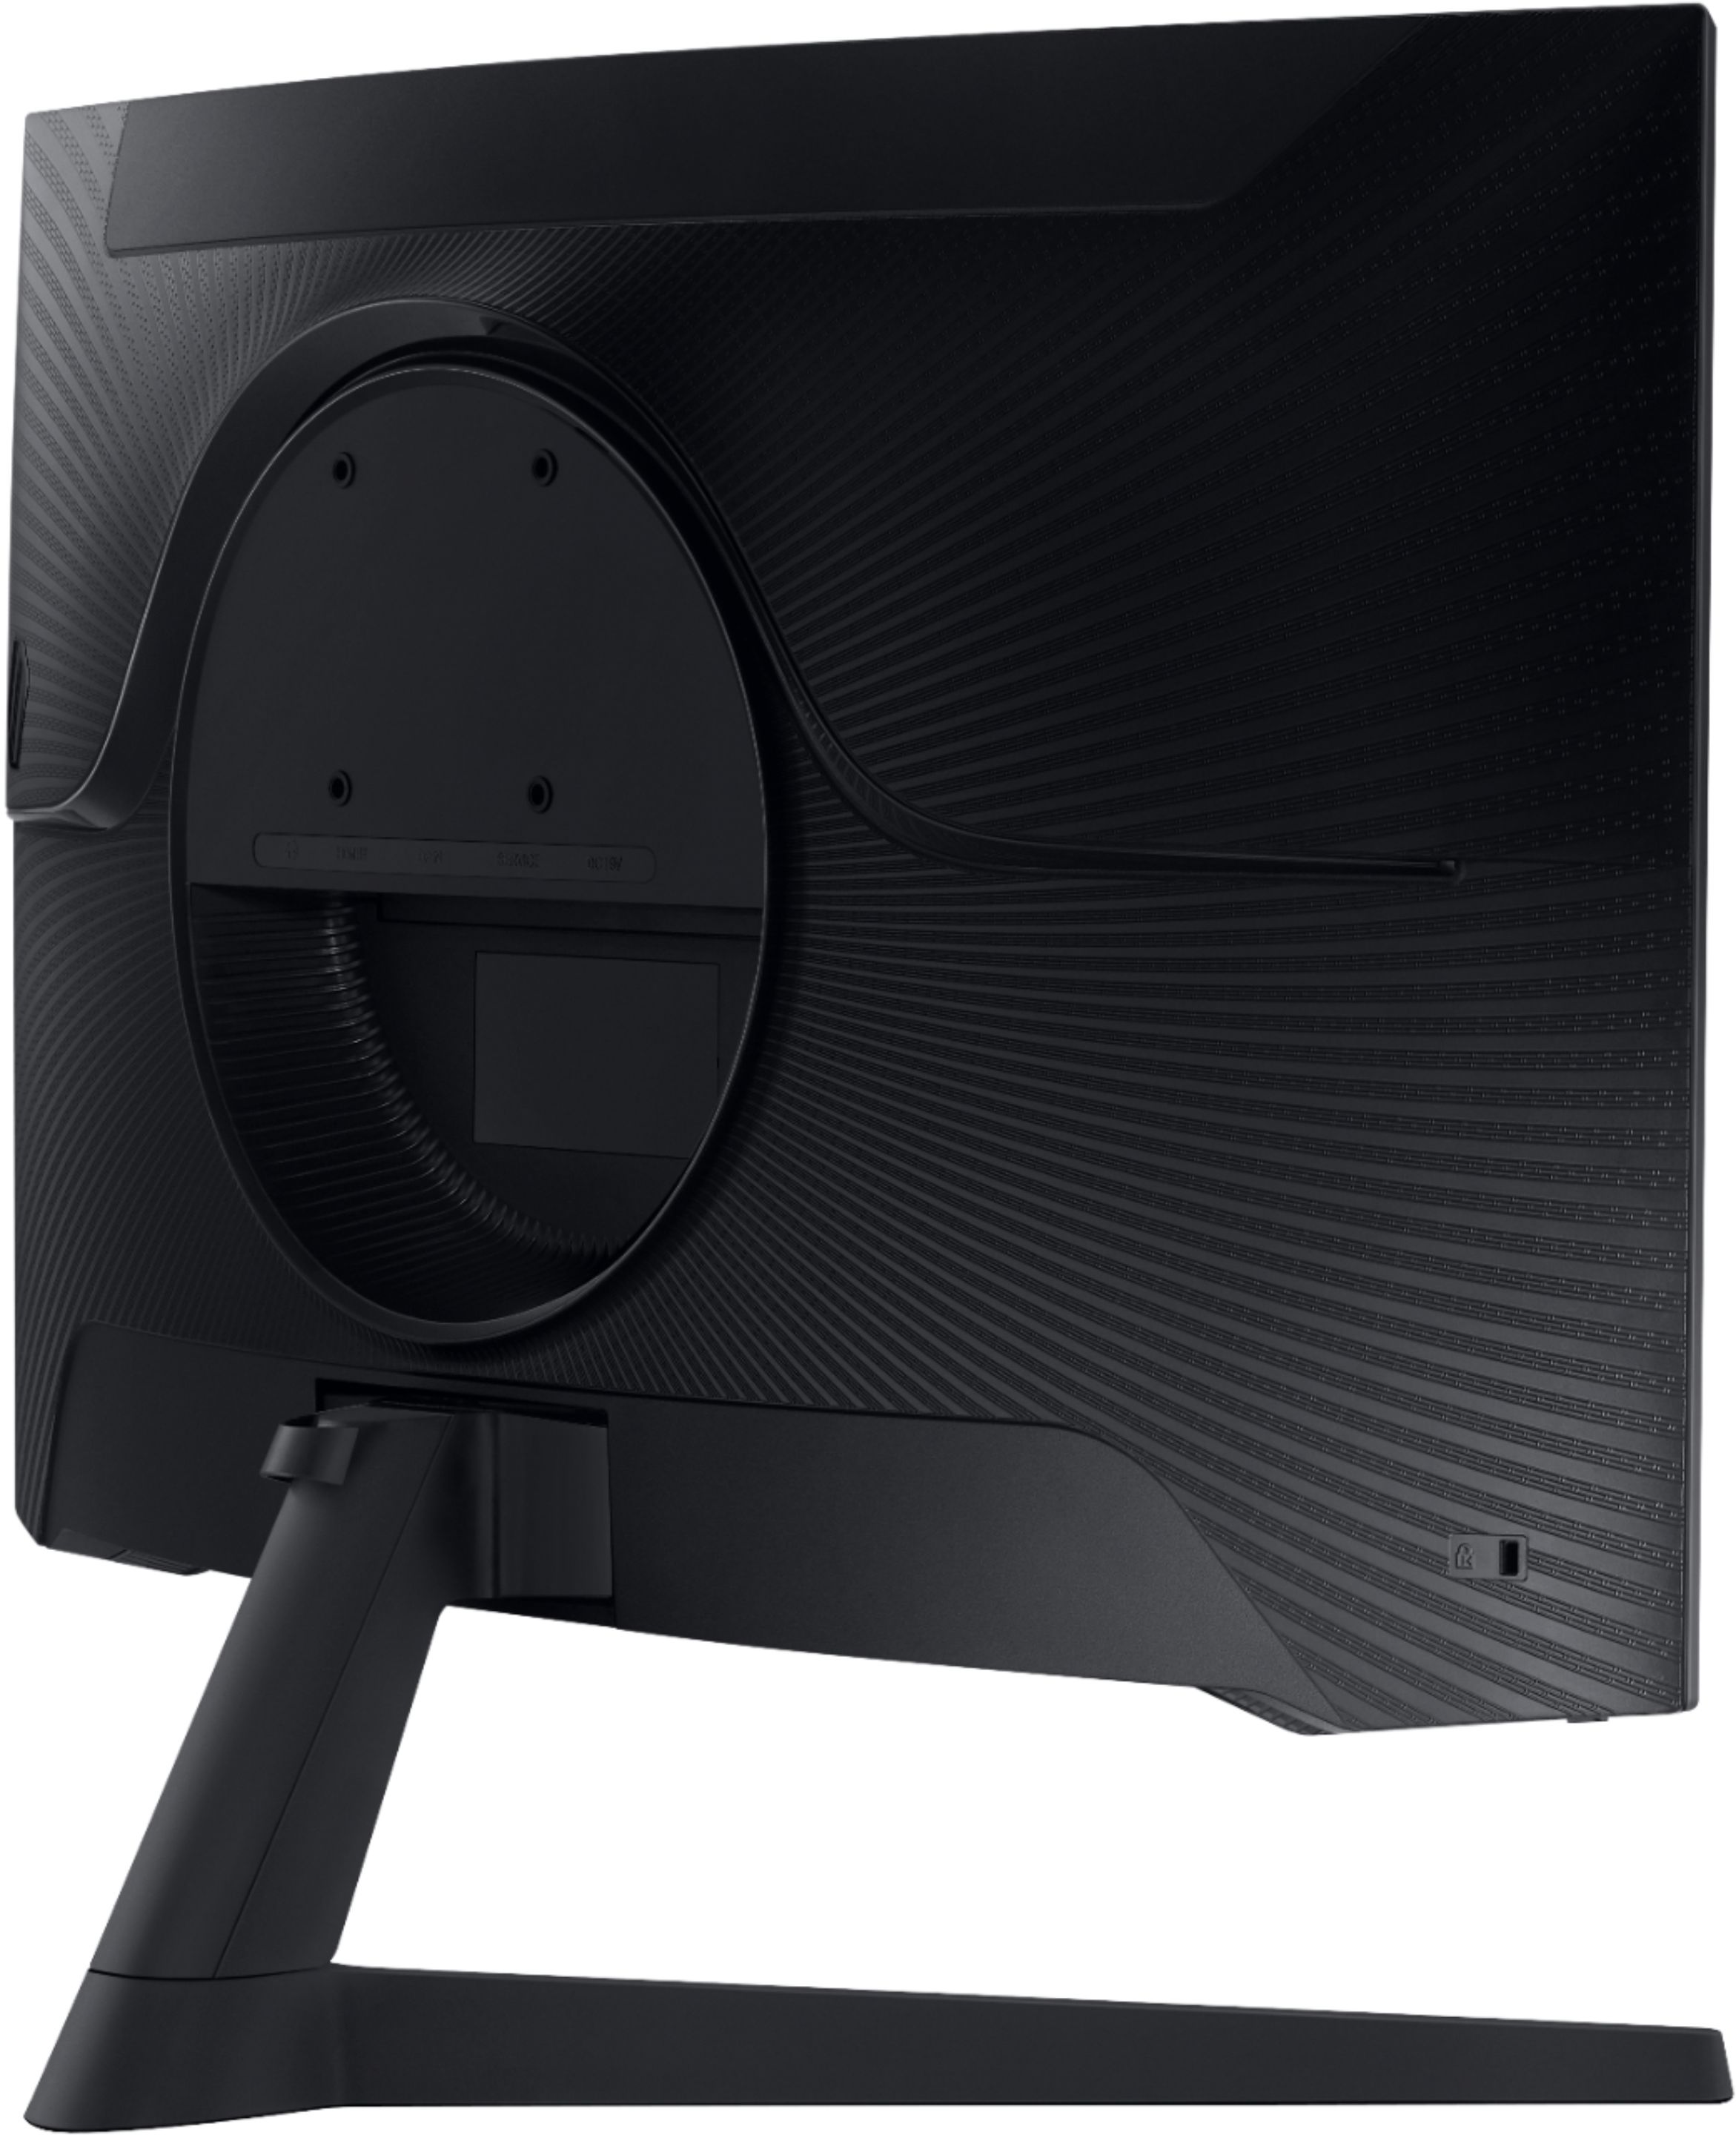 Best Buy: Samsung Odyssey G5 32 LED Curved WQHD FreeSync Monitor